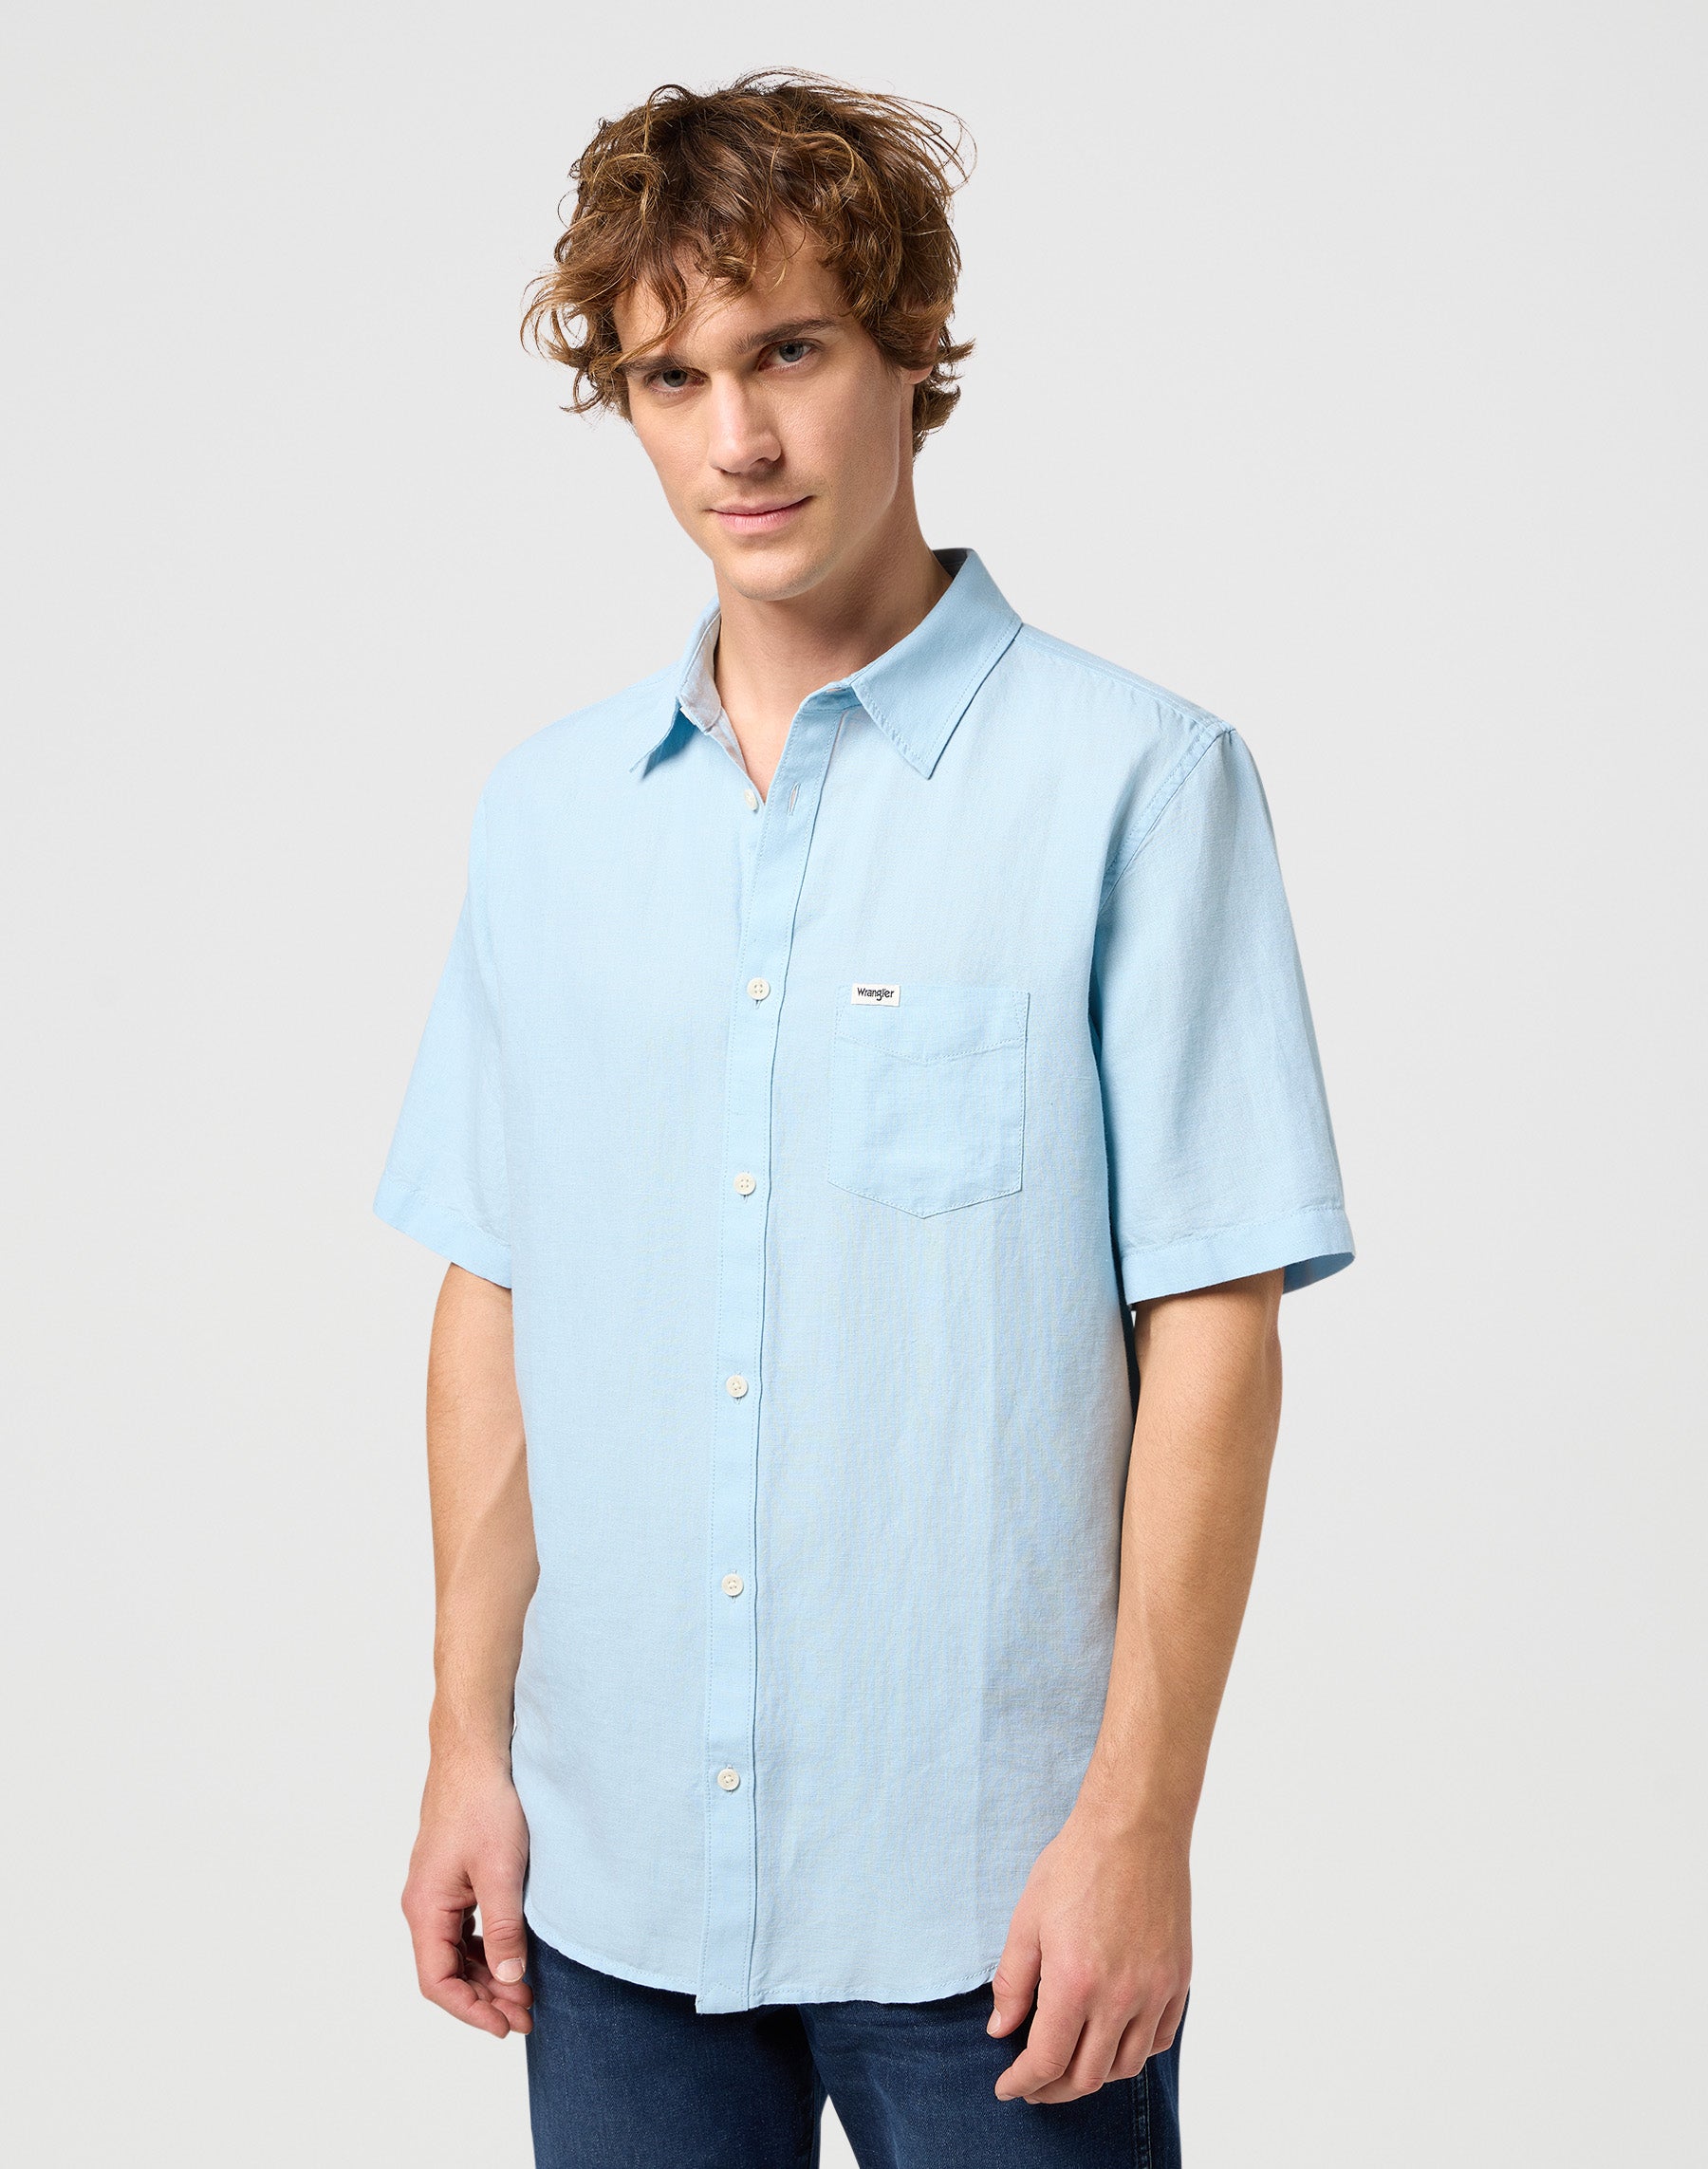 One Pocket Shirt in Dream Blue Hemden Wrangler   